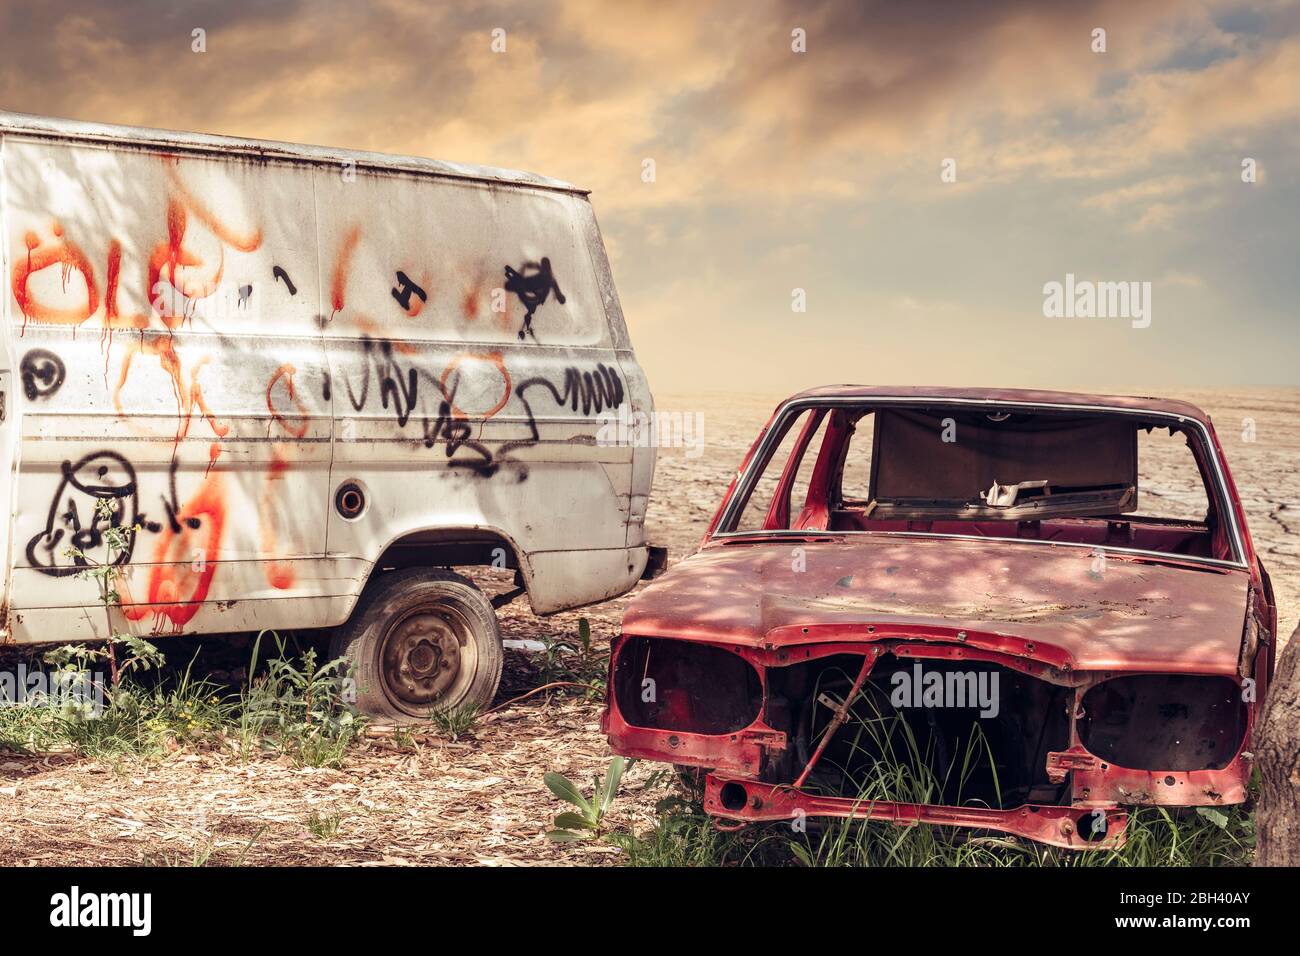 Vieux, vieux, abonded, rotten et rouillé véhicules restent dans un dépotoir d'automobile dans un désert. Concept de recyclage dans le jardin de la jonque Banque D'Images